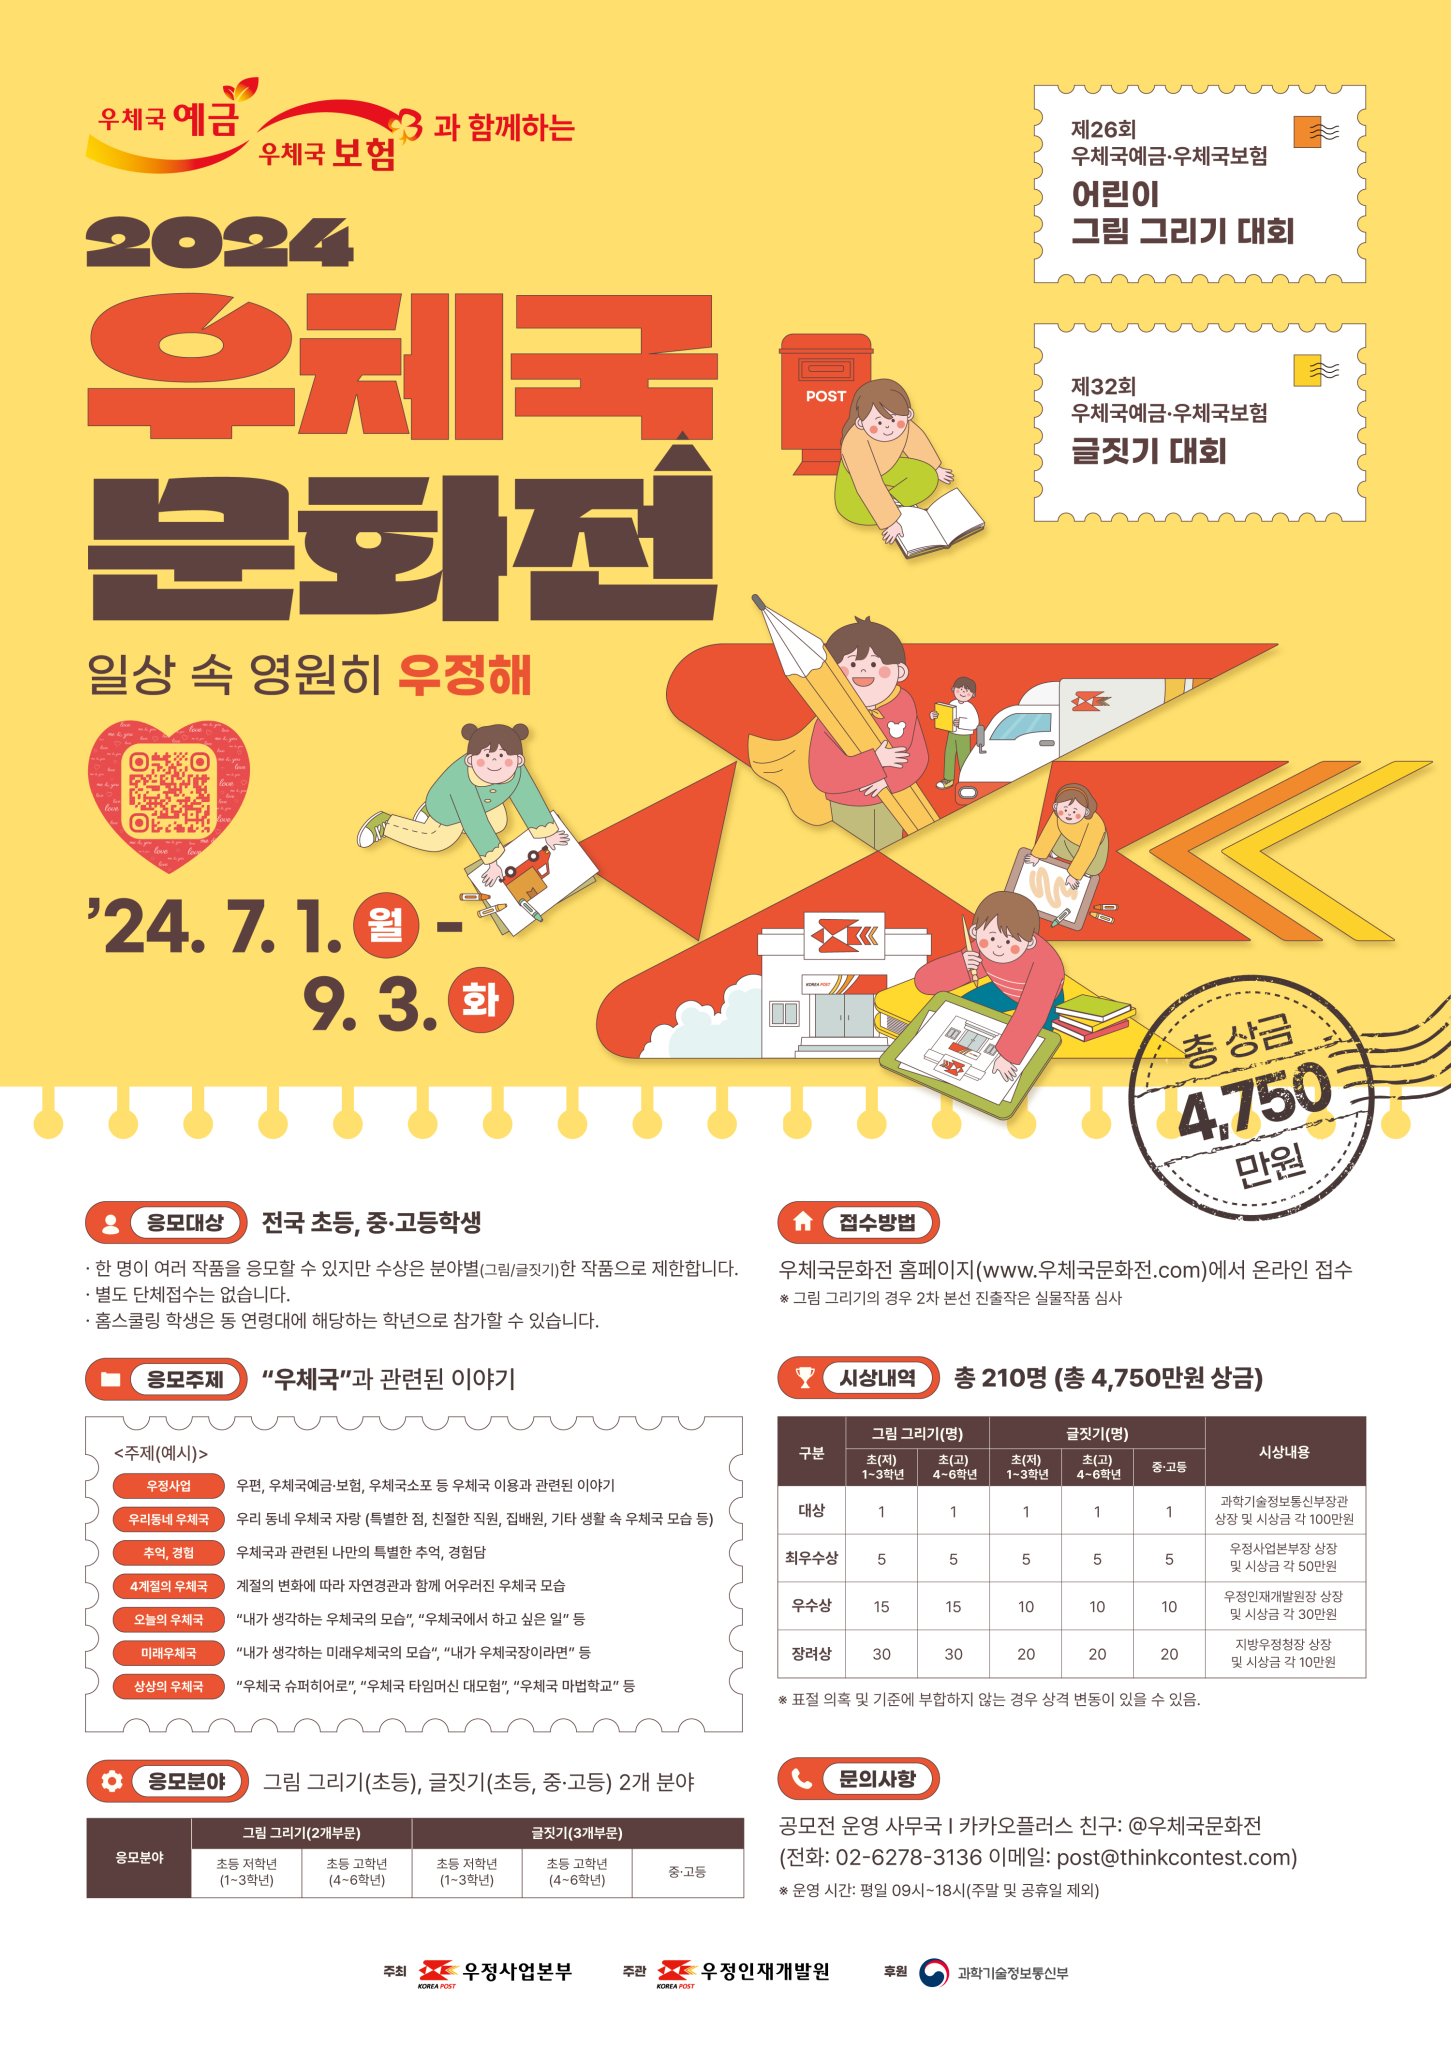 [부용초등학교-4248 (첨부) 김제우체국 영업과] 우체국문화전 포스터